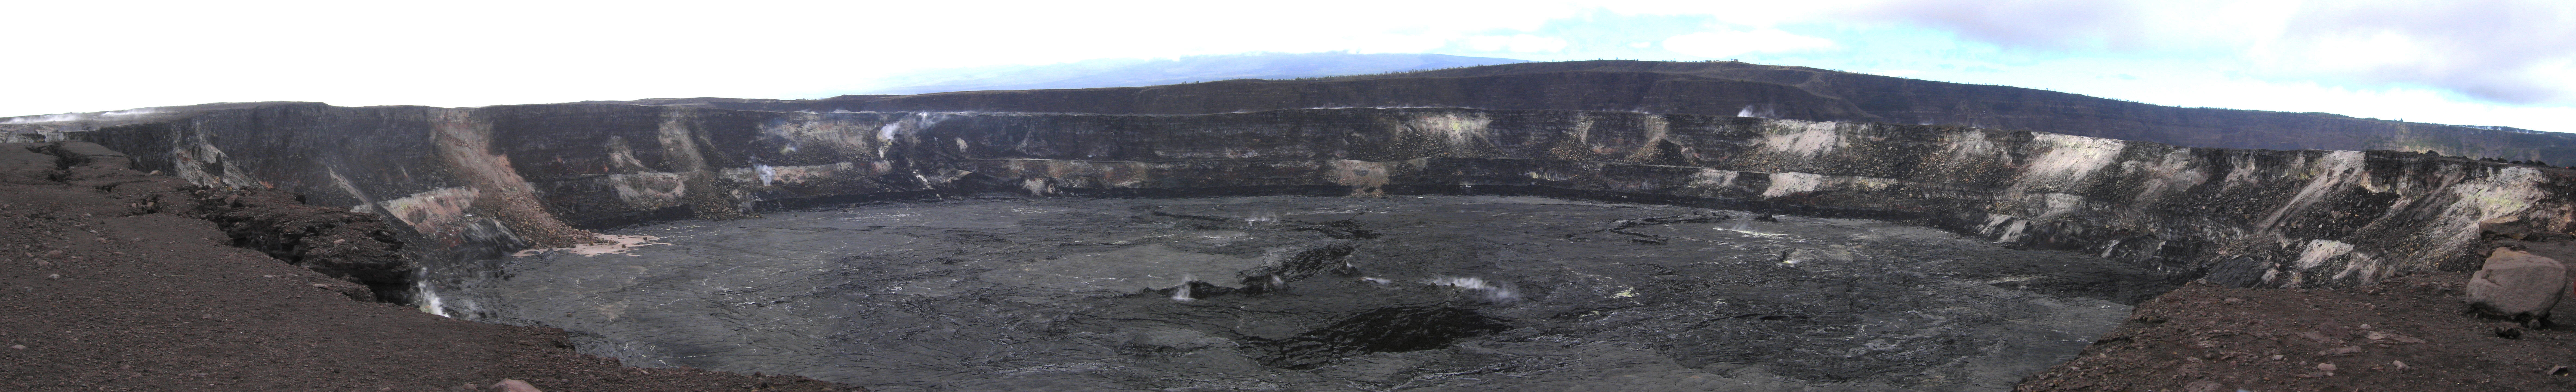 Kilauea 3